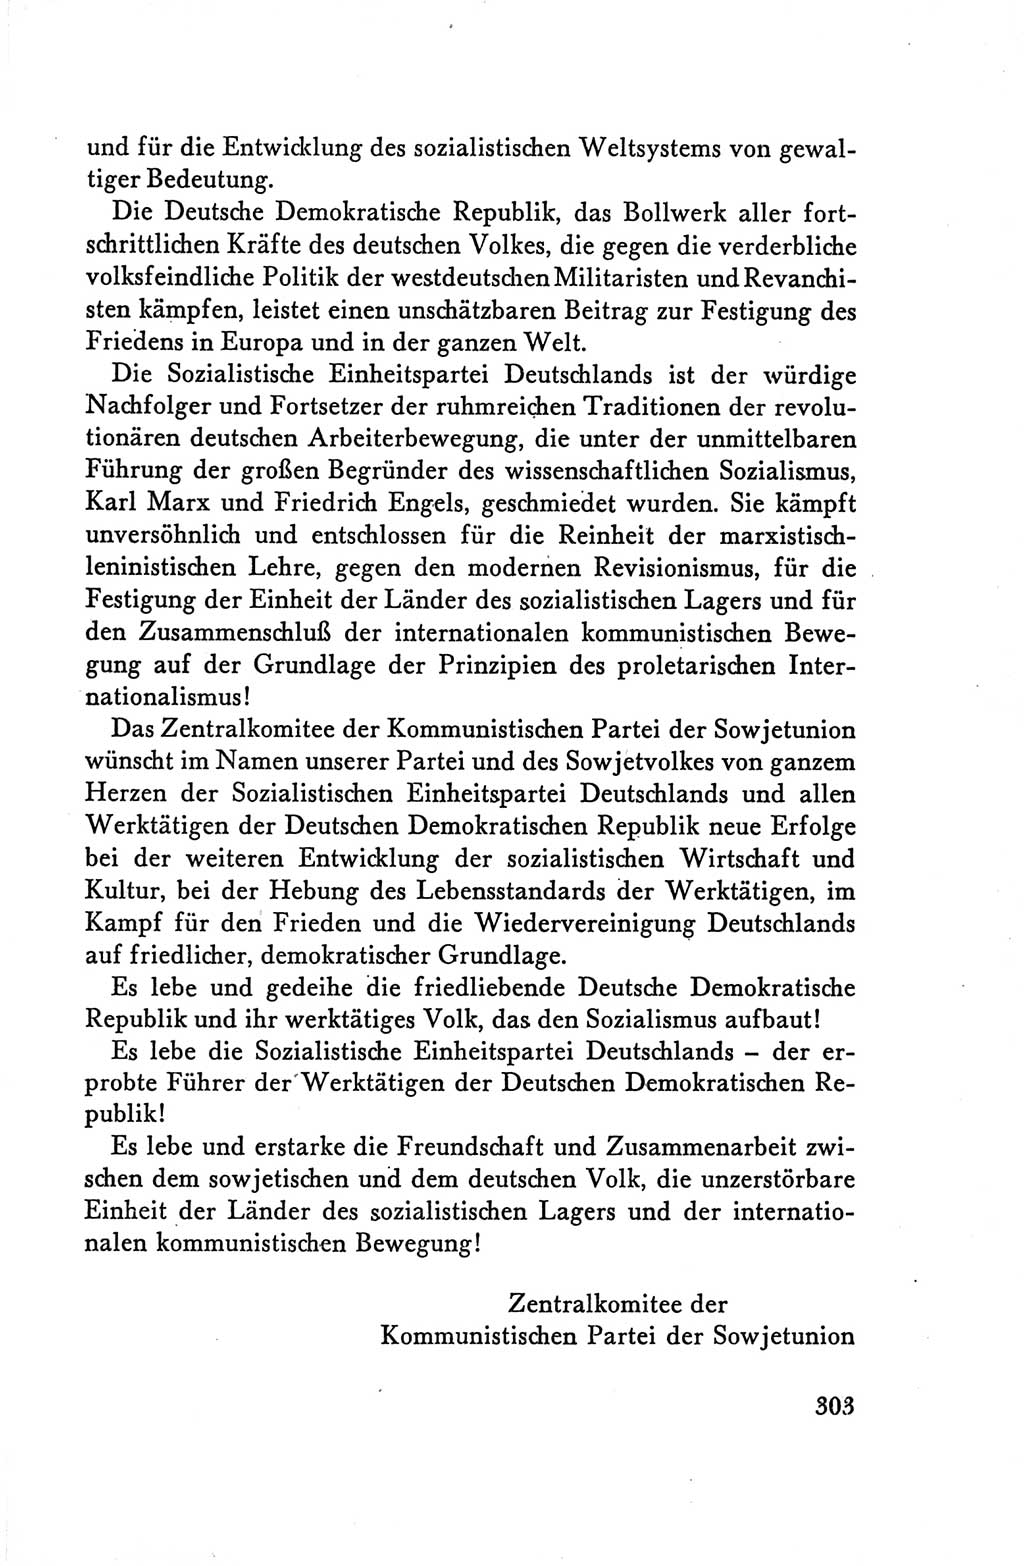 Protokoll der Verhandlungen des Ⅴ. Parteitages der Sozialistischen Einheitspartei Deutschlands (SED) [Deutsche Demokratische Republik (DDR)] 1958, Seite 303